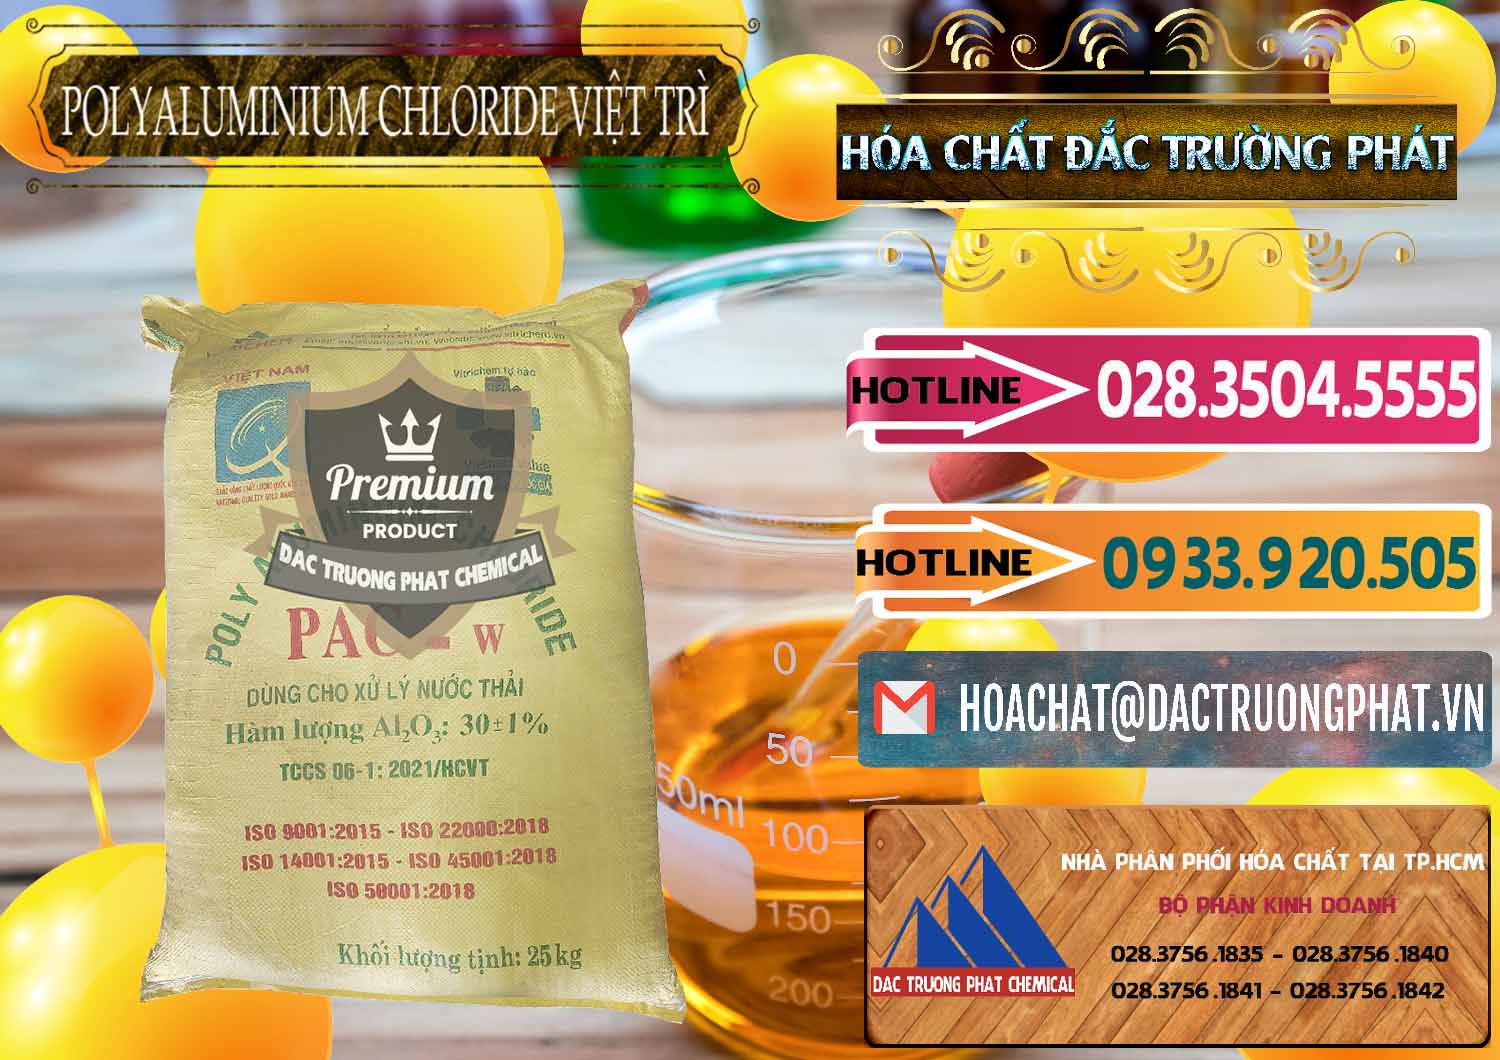 Chuyên kinh doanh _ cung cấp PAC - Polyaluminium Chloride Việt Trì Việt Nam - 0487 - Chuyên cung cấp & phân phối hóa chất tại TP.HCM - dactruongphat.vn